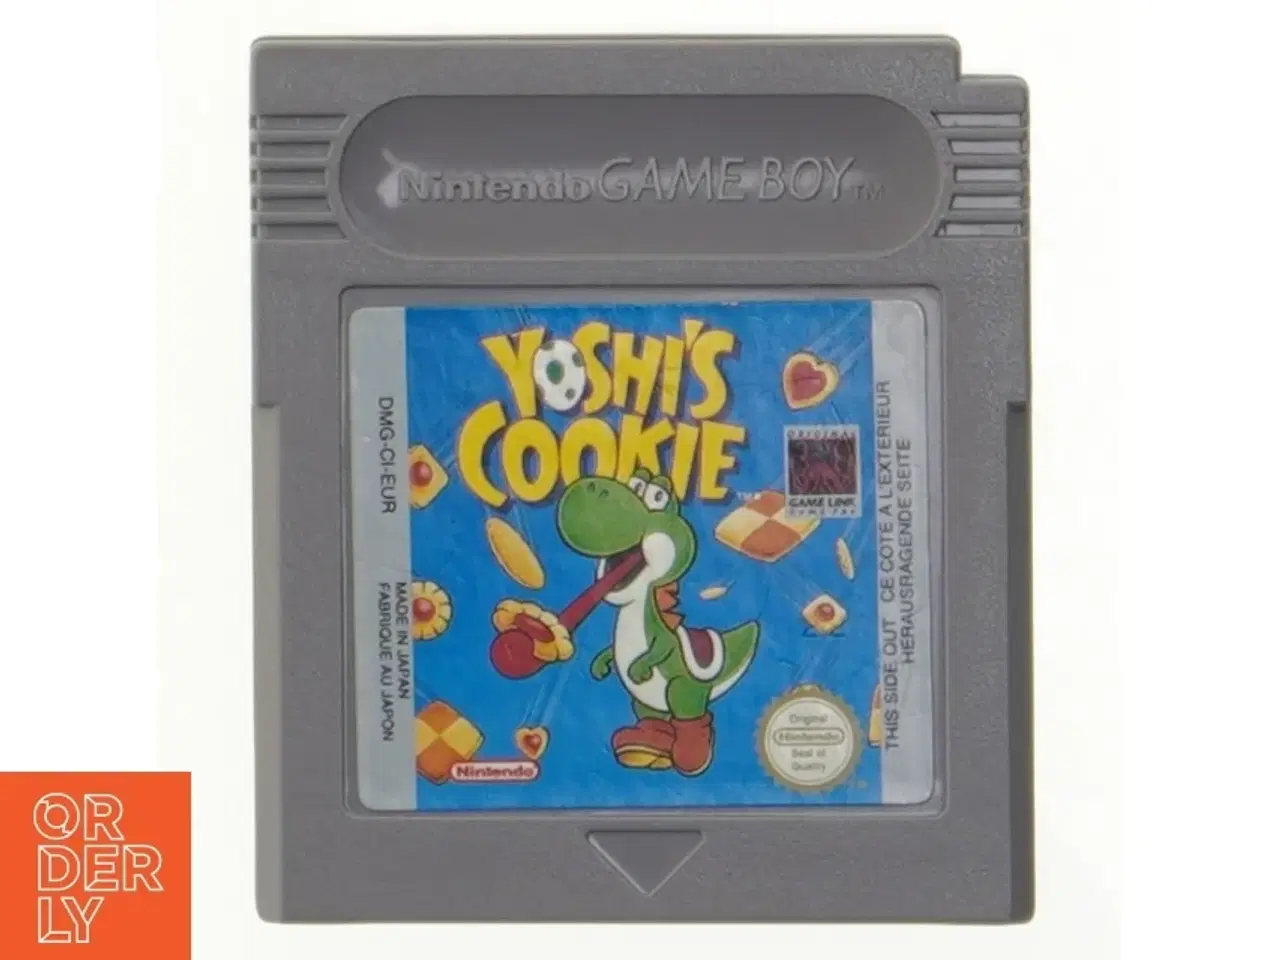 Billede 1 - Nintendo Game Boy spil, Yoshi's Cookie fra Nintendo (str. 6 cm)